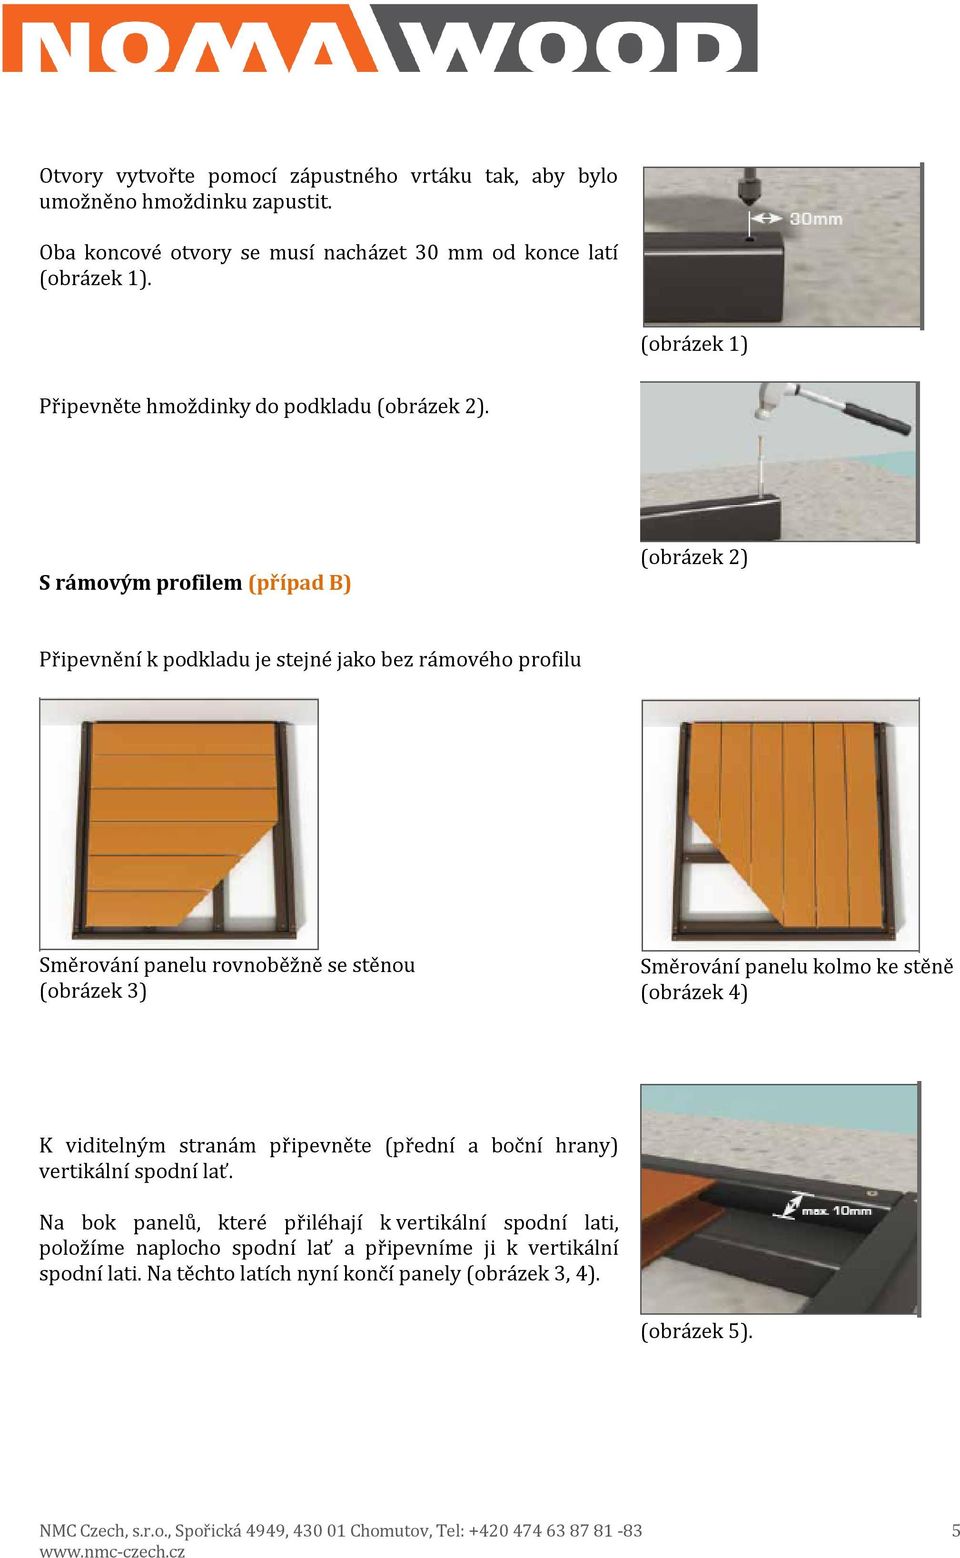 S rámovým profilem (případ B) (obrázek 2) Připevnění k podkladu je stejné jako bez rámového profilu Směrování panelu rovnoběžně se stěnou (obrázek 3) Směrování panelu kolmo ke stěně